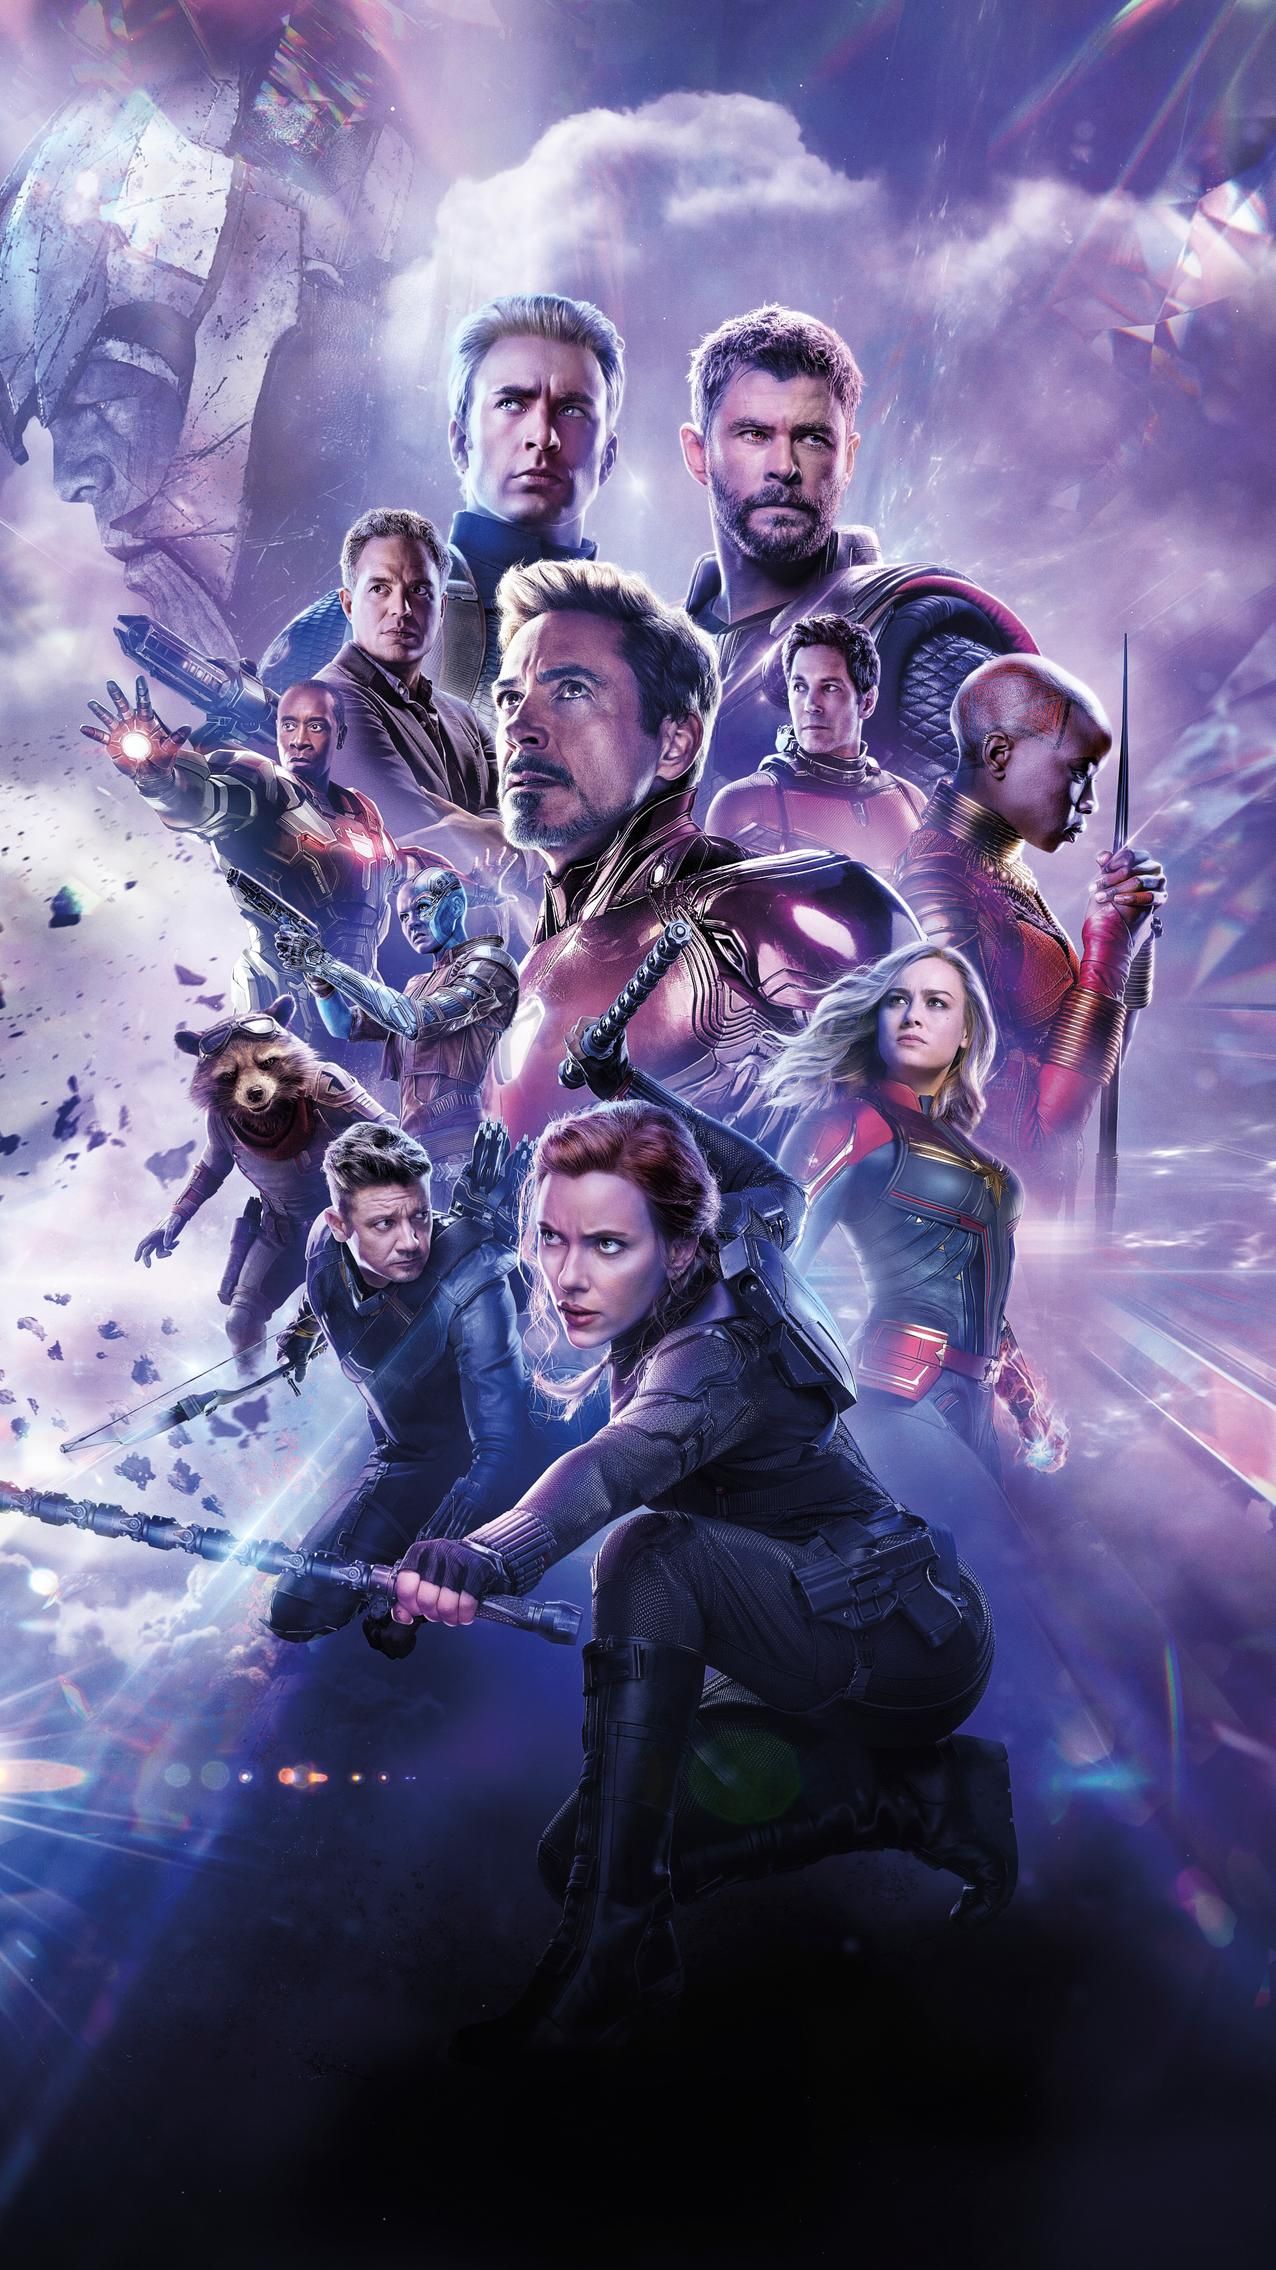 Marvel's Avengers Wallpapers